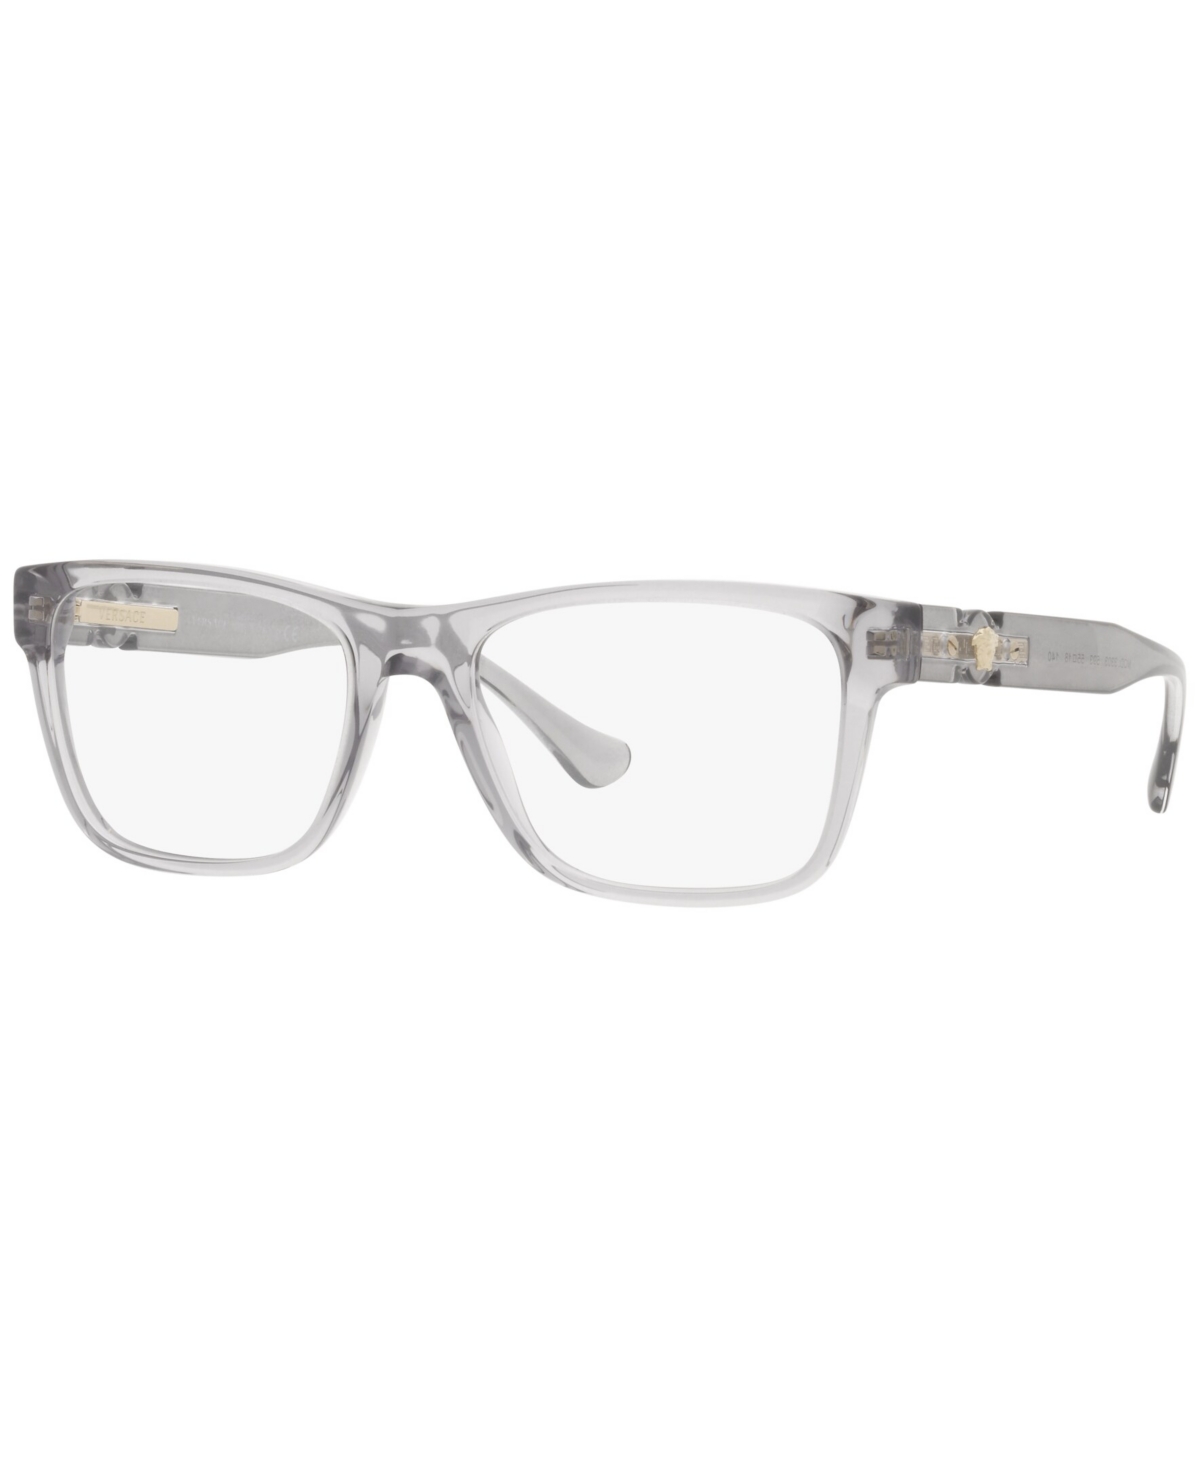 VE3303 Men's Rectangle Eyeglasses - Black